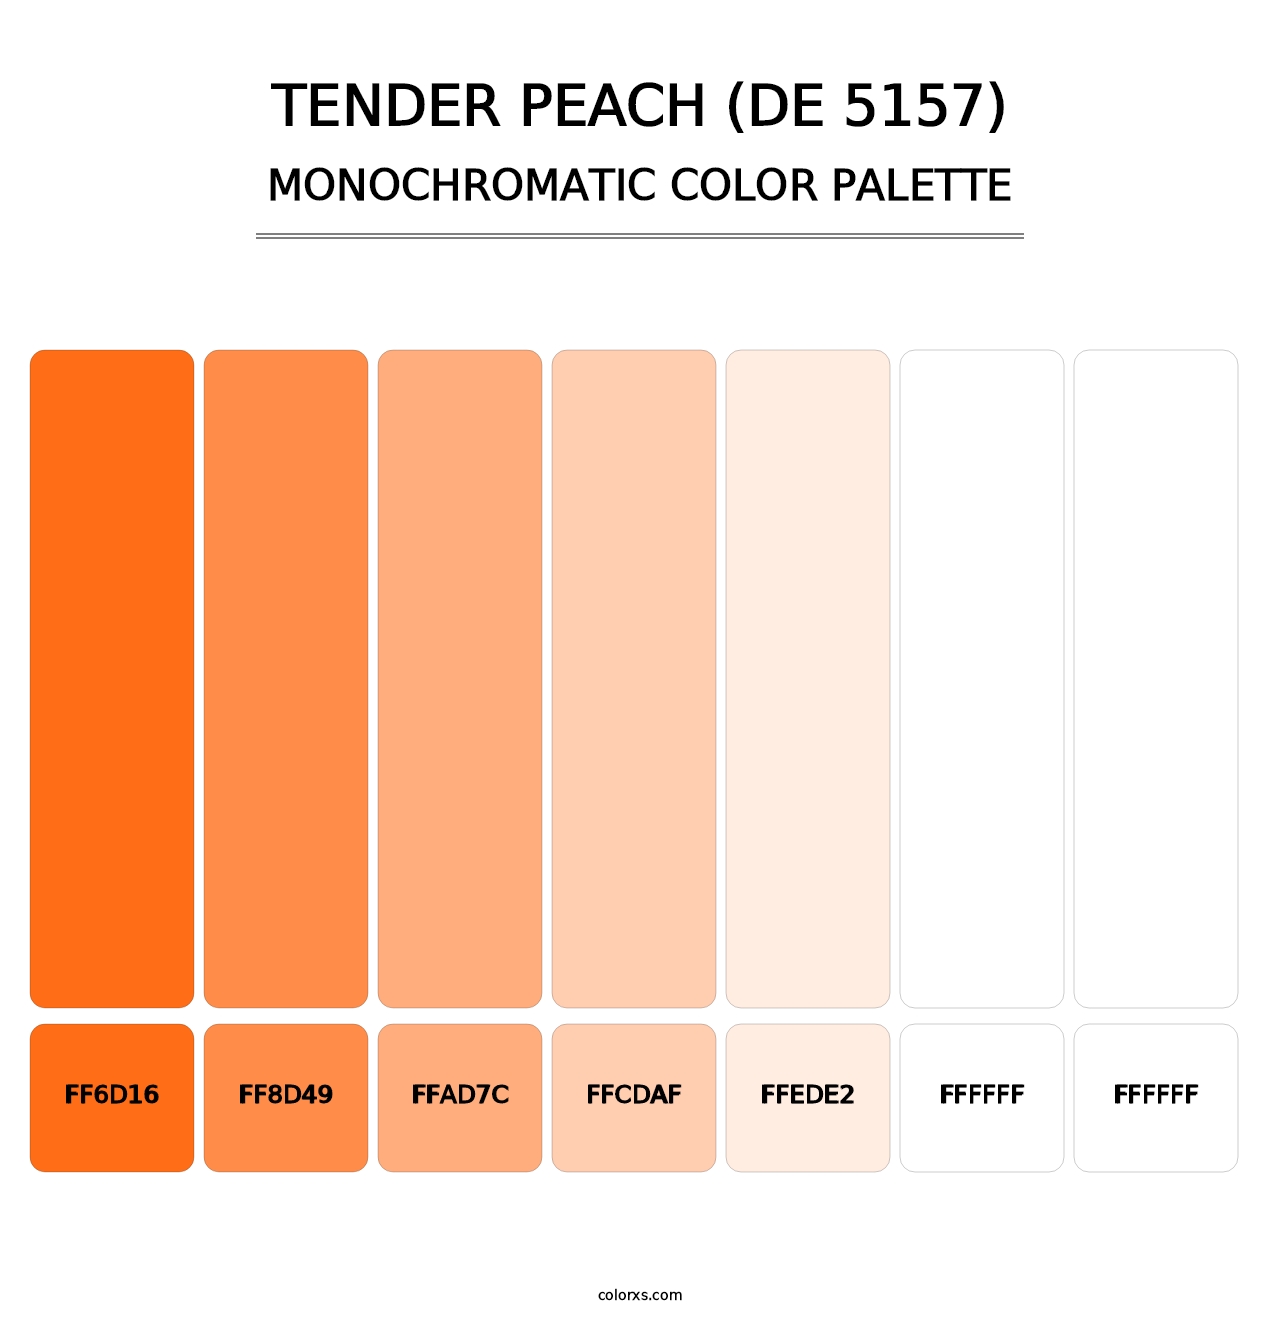 Tender Peach (DE 5157) - Monochromatic Color Palette